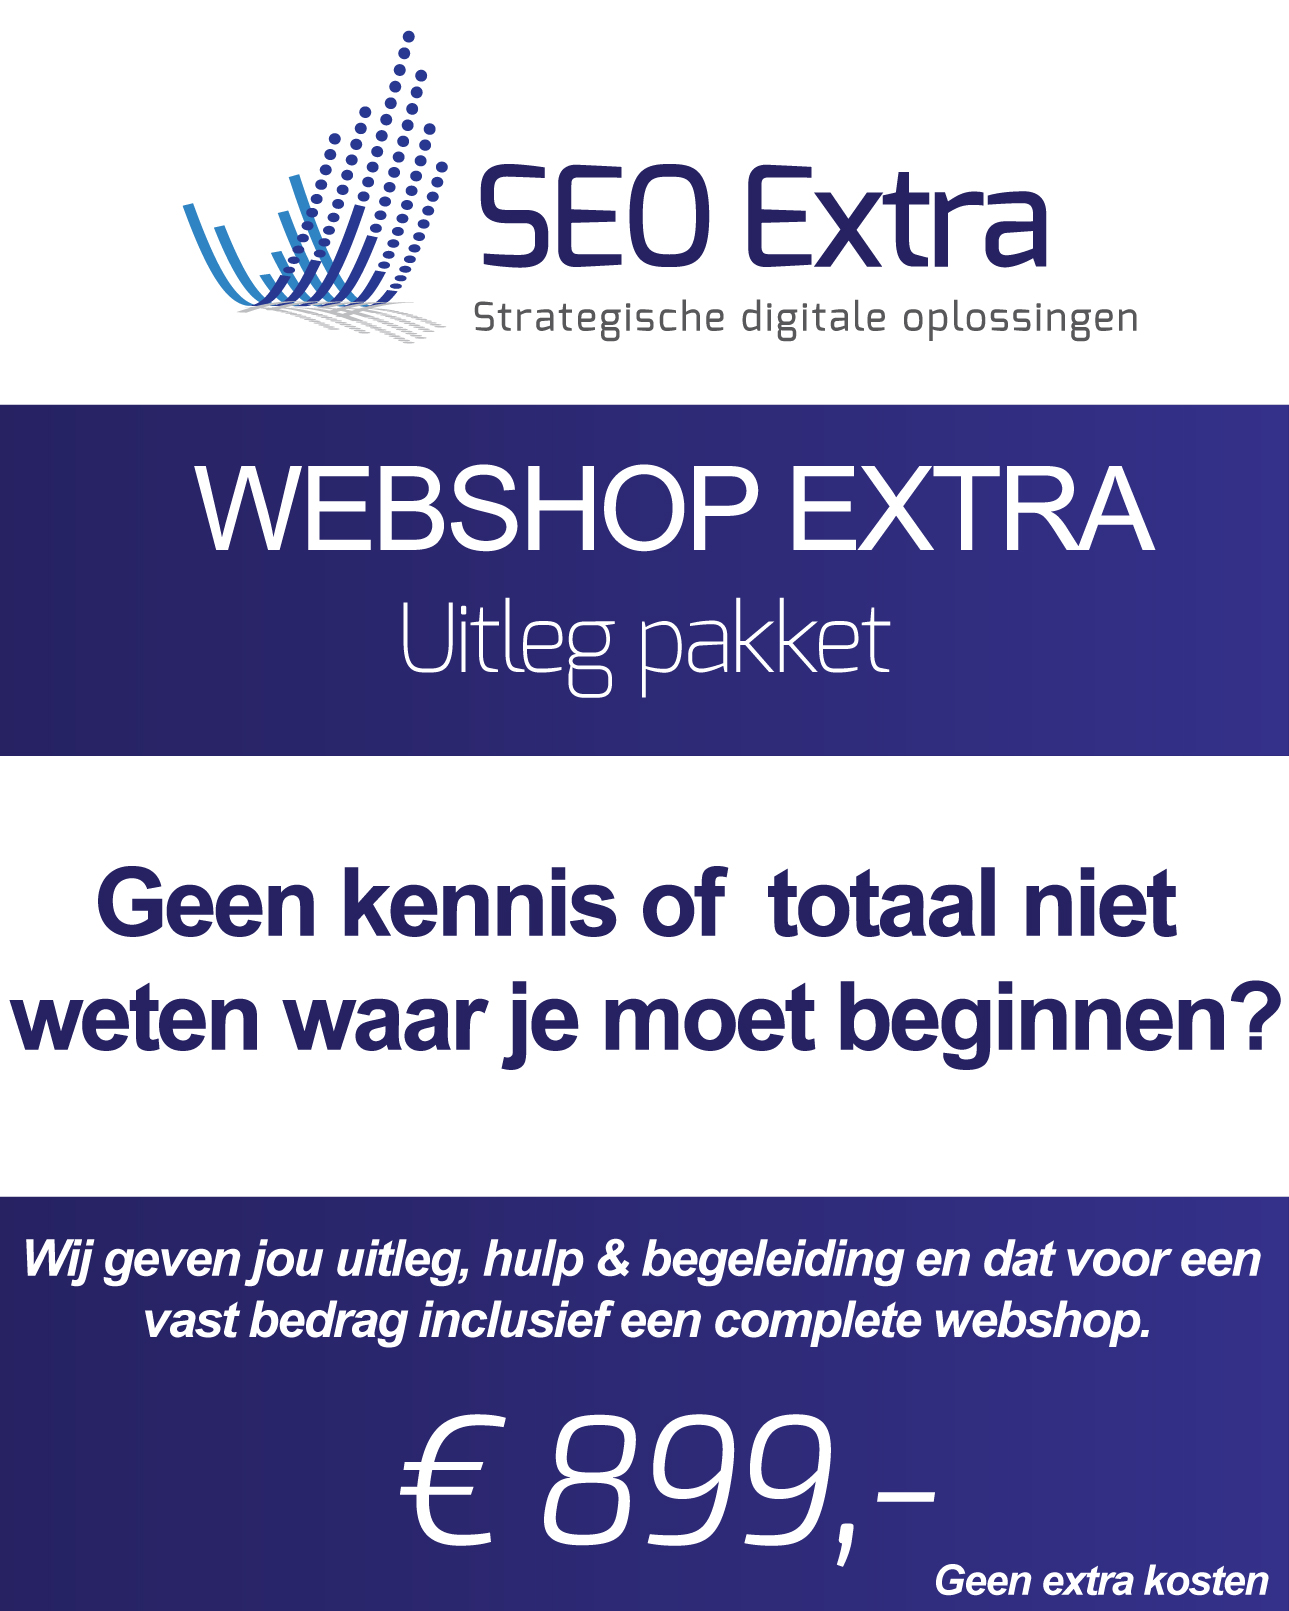 (c) Seo-extra.nl